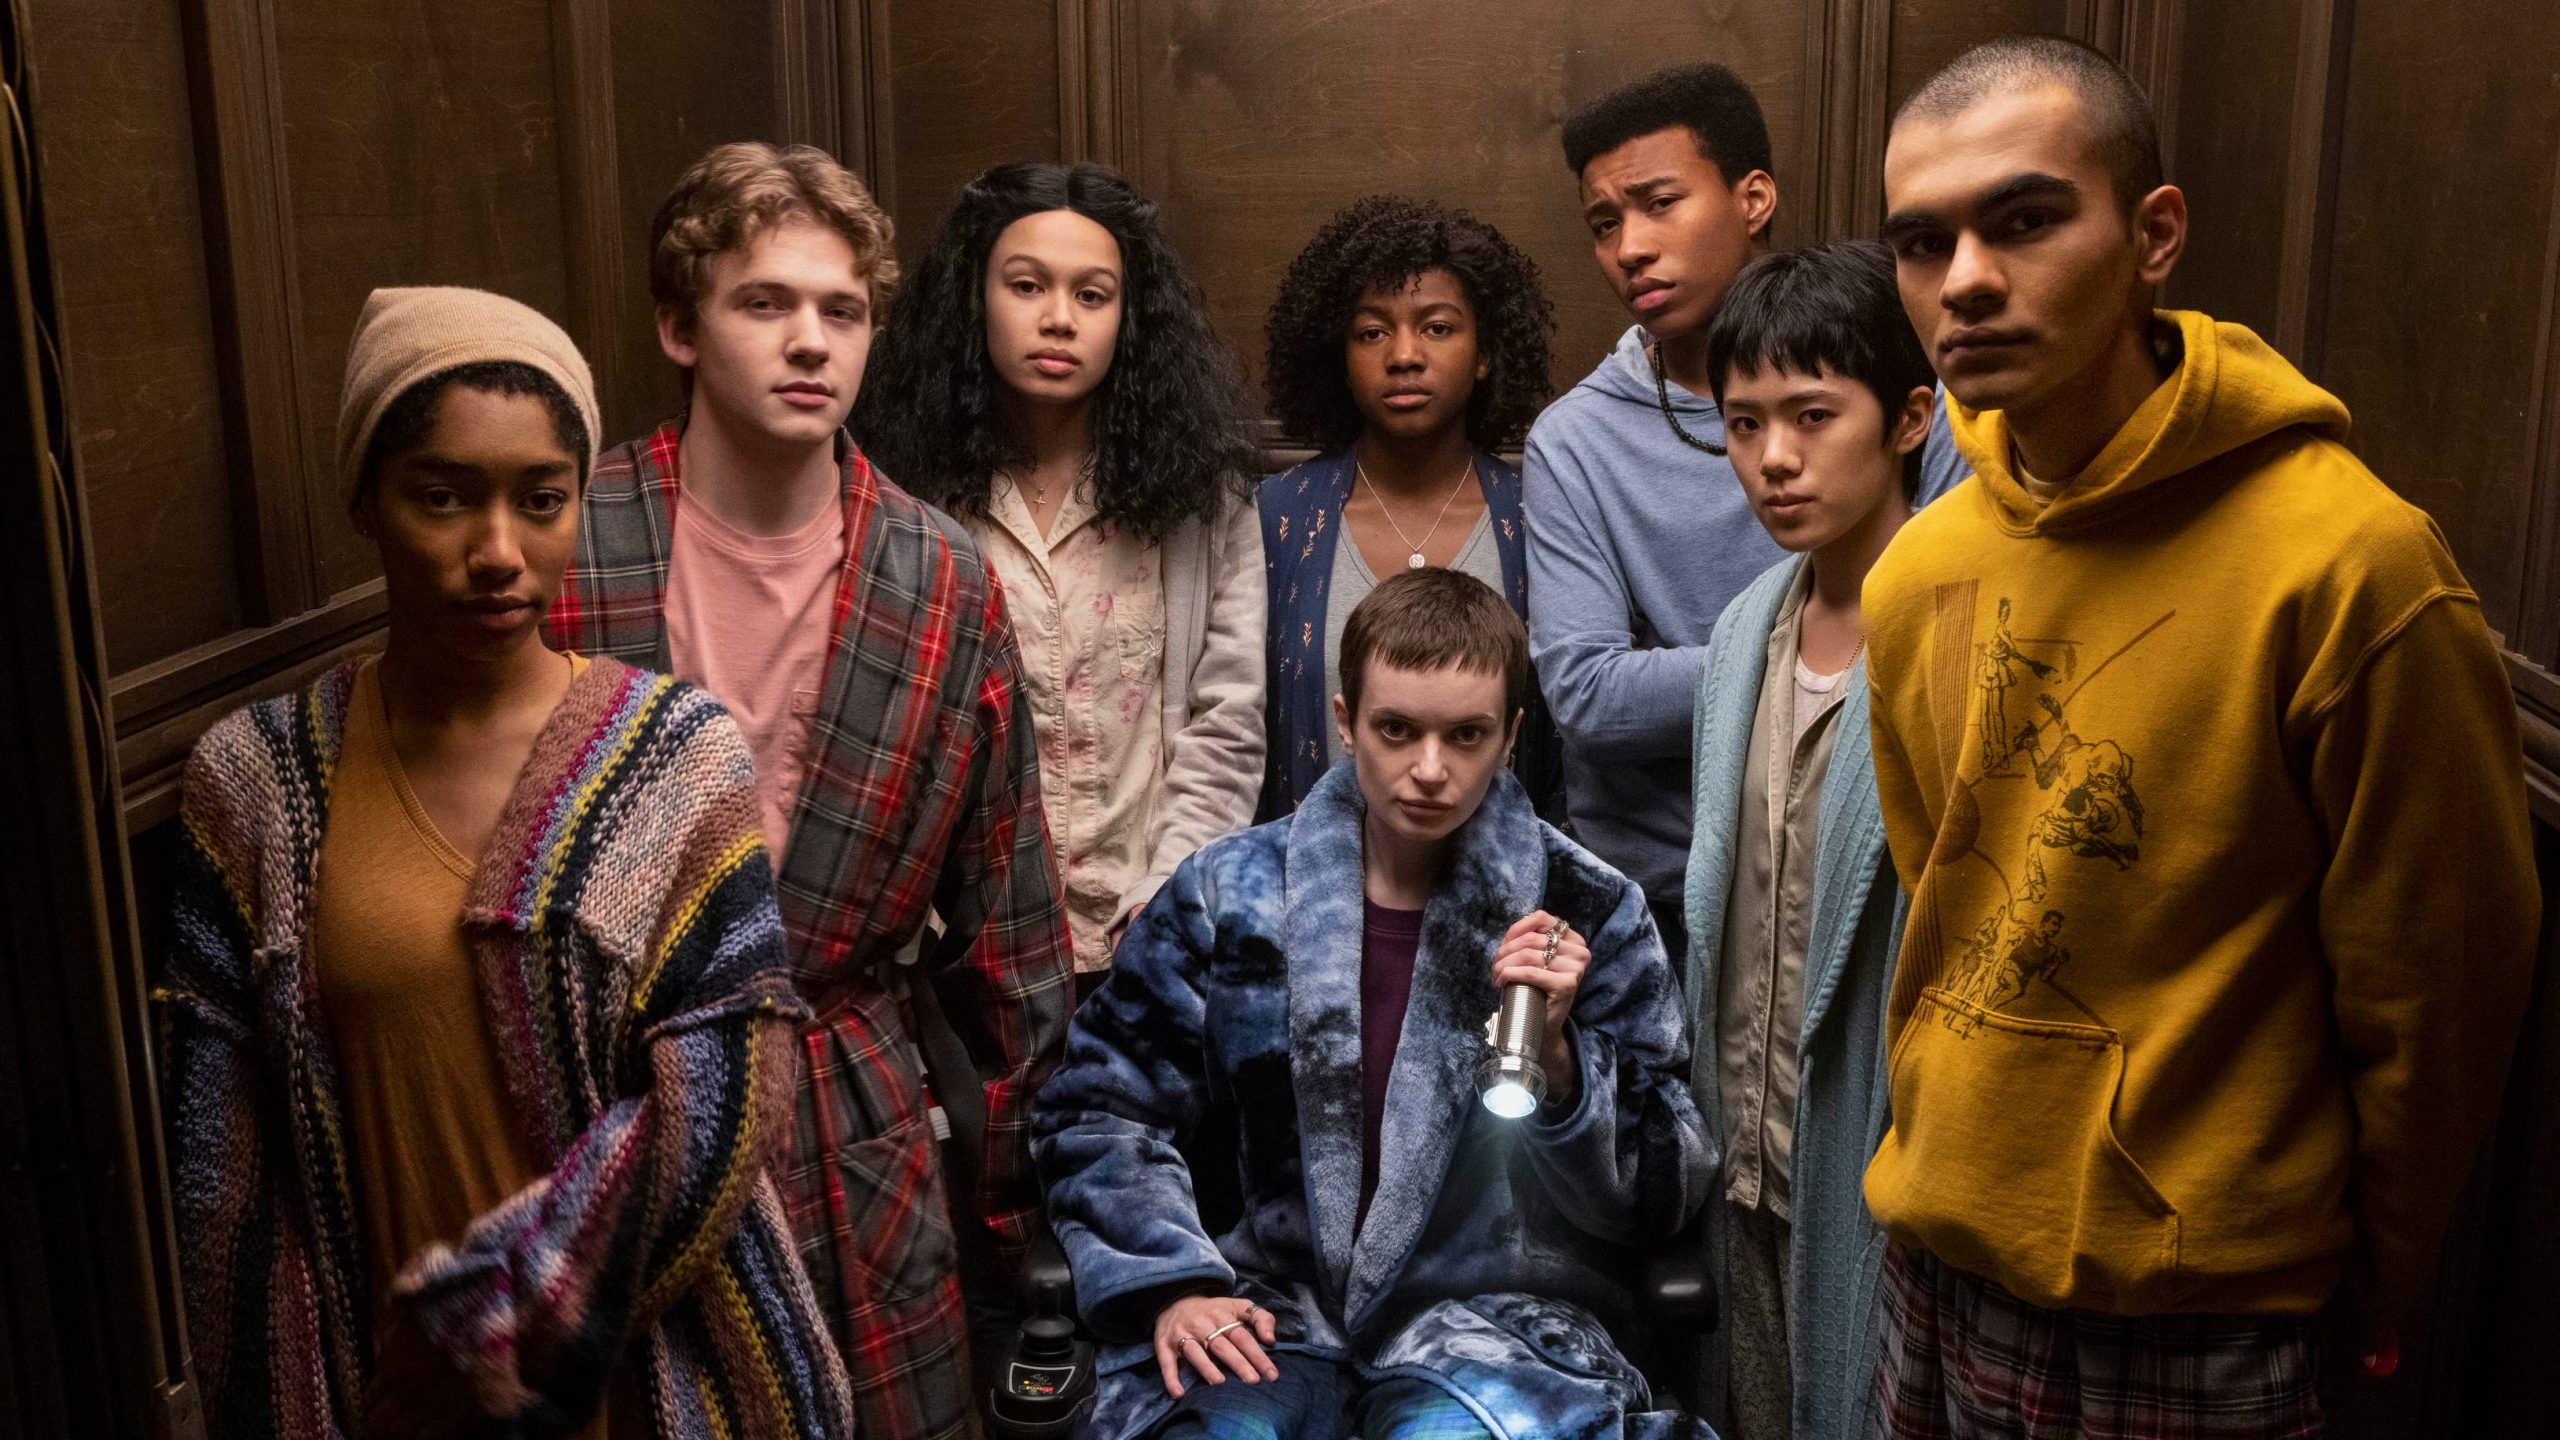 Η παρέα που θα μας απασχολήσει στα 10 επεισόδια της νέα σειράς του Netflix, "Λέσχη του Μεσονυχτίου" αποτελείται από 8 επίδοξους νέους ηθοποιούς. 